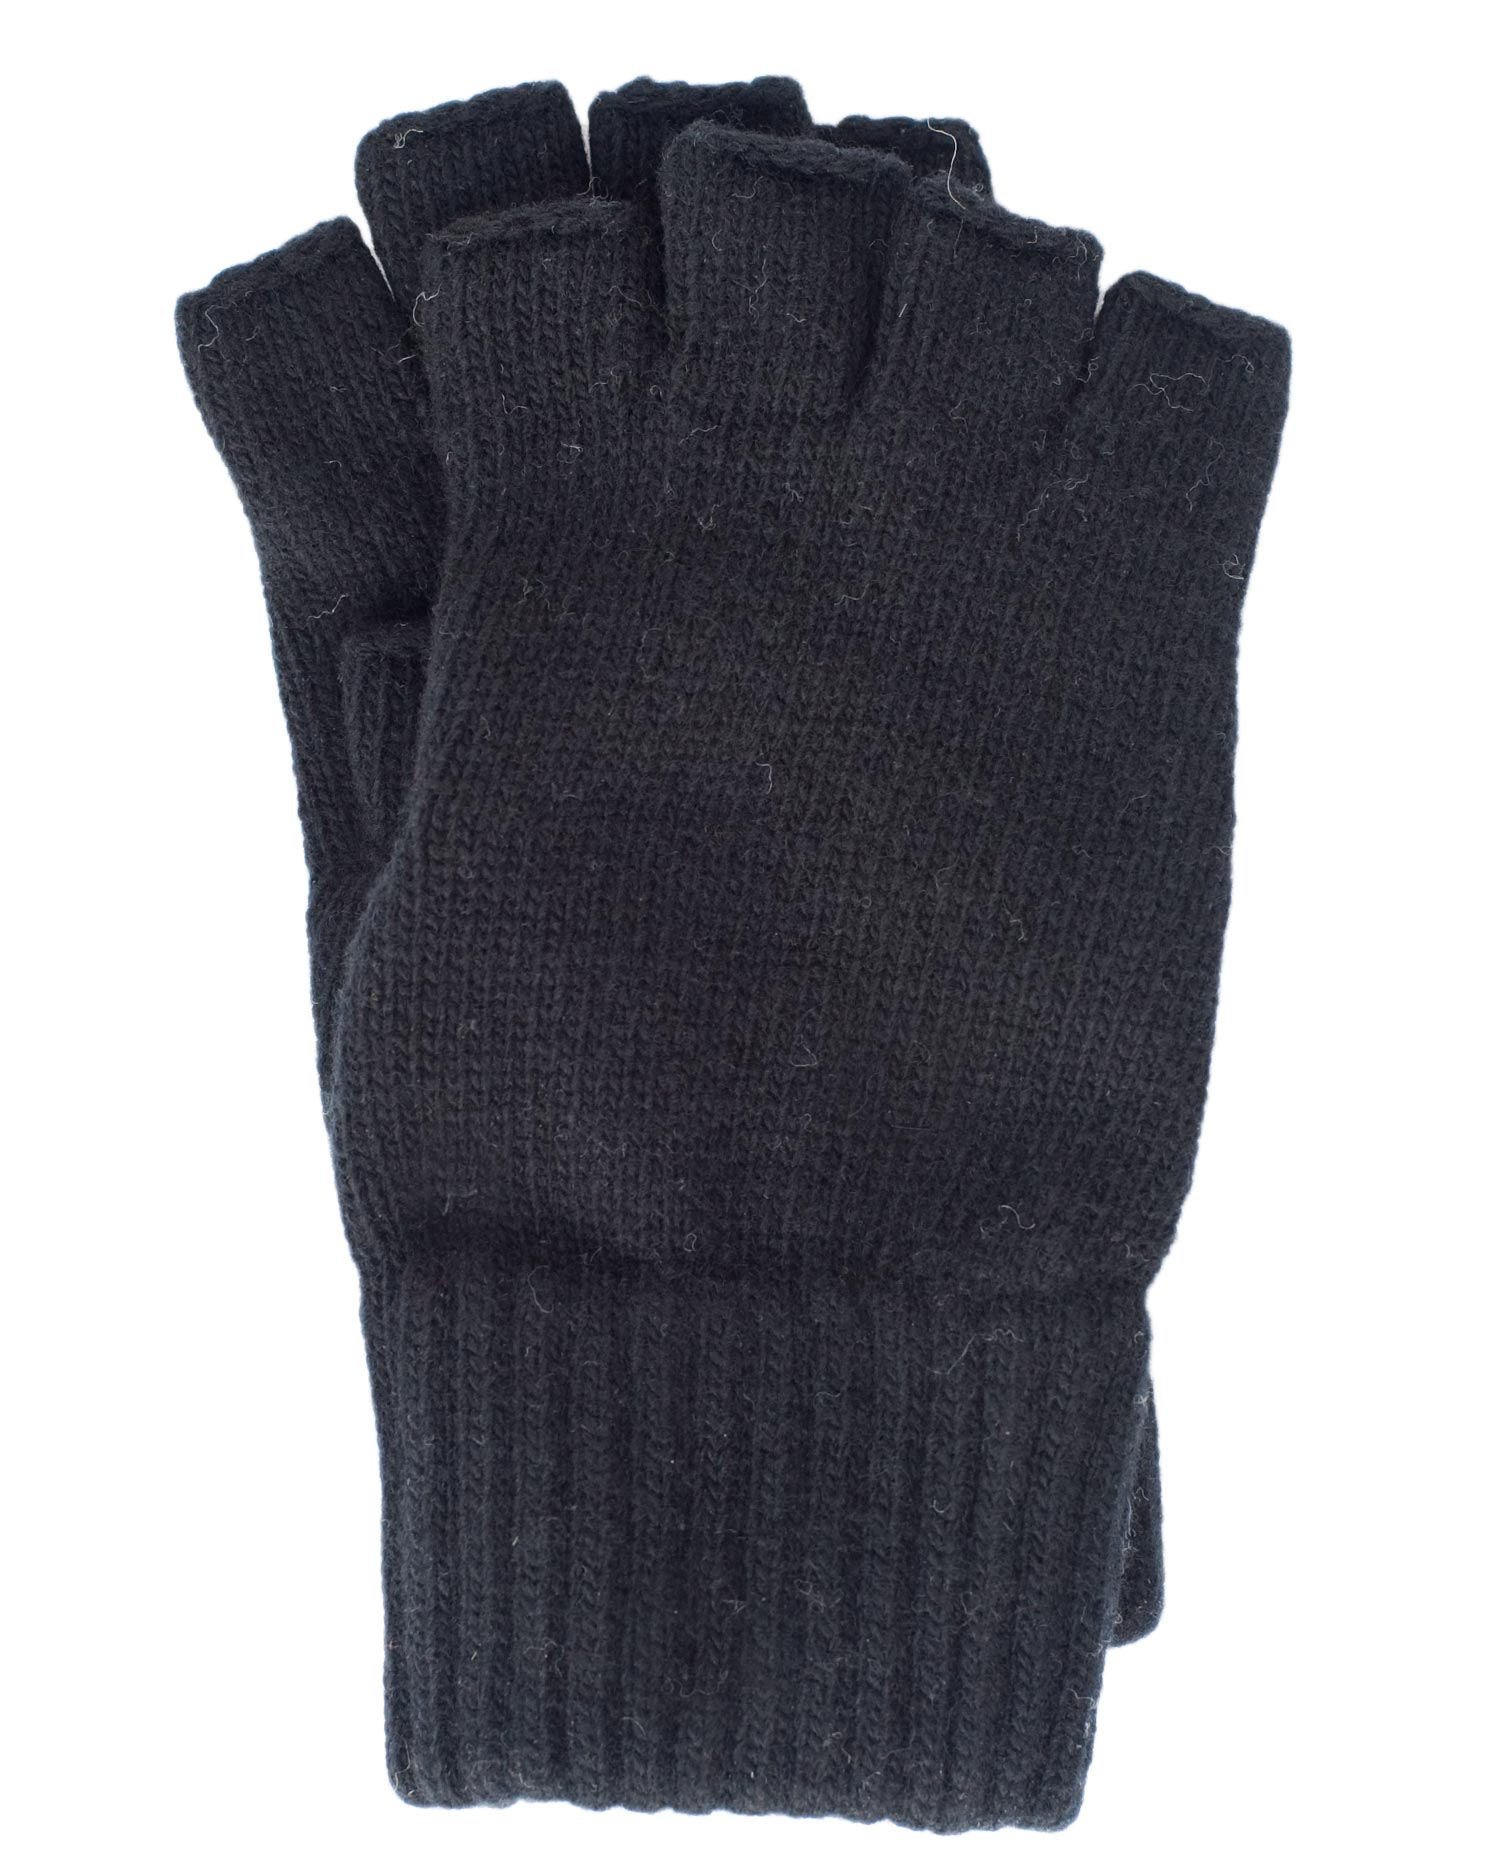 Merino Foster-Natur Kinder Finger Handschuhe 100/% Wolle